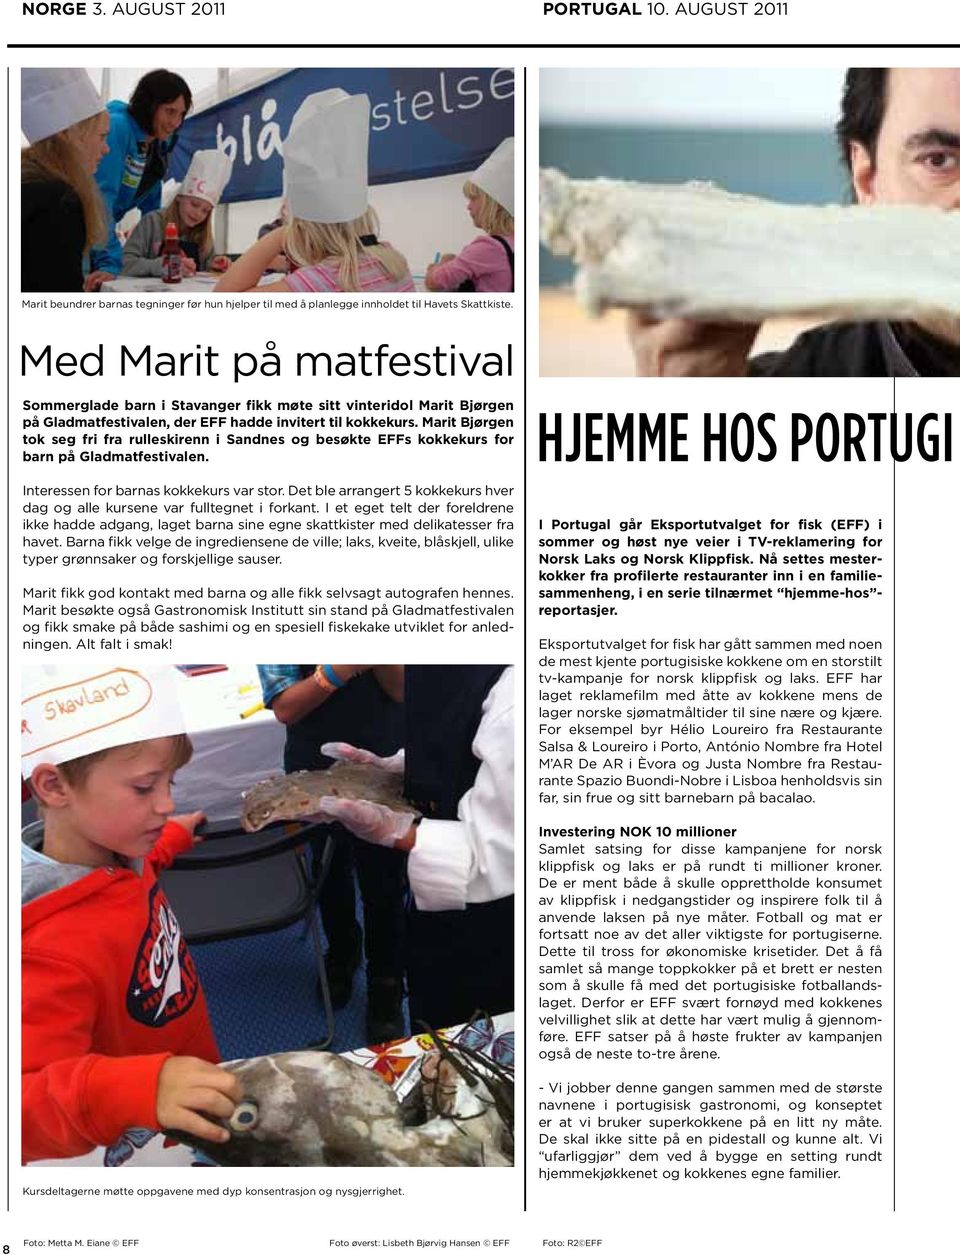 Marit Bjørgen tok seg fri fra rulleskirenn i Sandnes og besøkte EFFs kokkekurs for barn på Gladmatfestivalen. Interessen for barnas kokkekurs var stor.